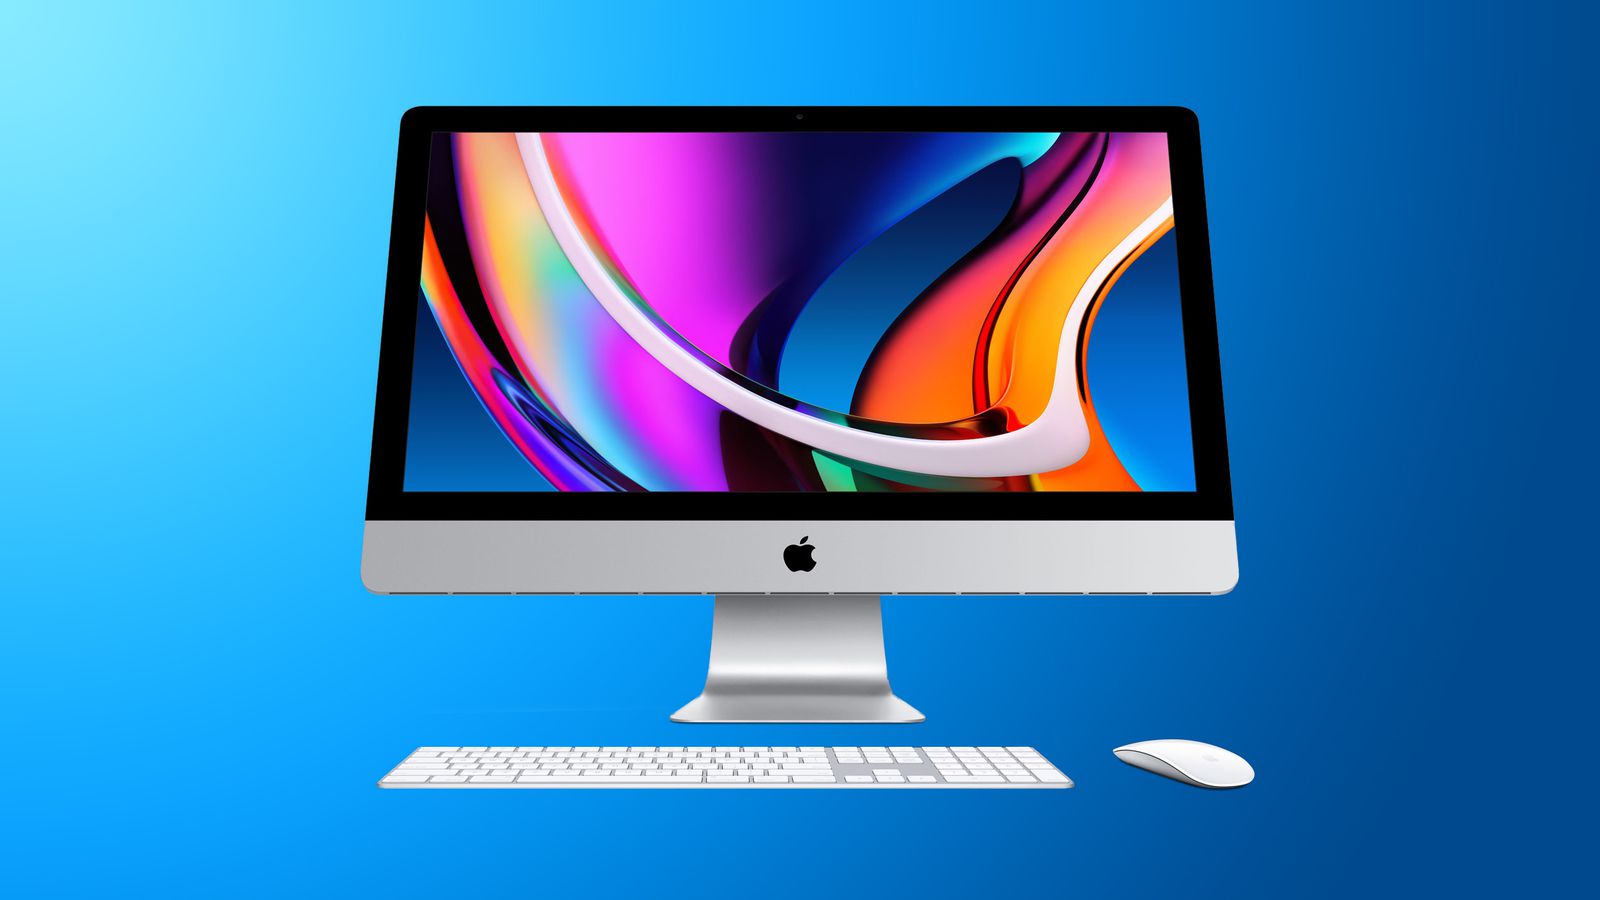 Bạn đã sẵn sàng trải nghiệm iMac 27 inch màn hình nano-texture chưa? Màn hình siêu sáng, độ phân giải tuyệt vời cùng nhiều tính năng hấp dẫn khác sẽ khiến bạn nhanh chóng trở thành fan của sản phẩm này.